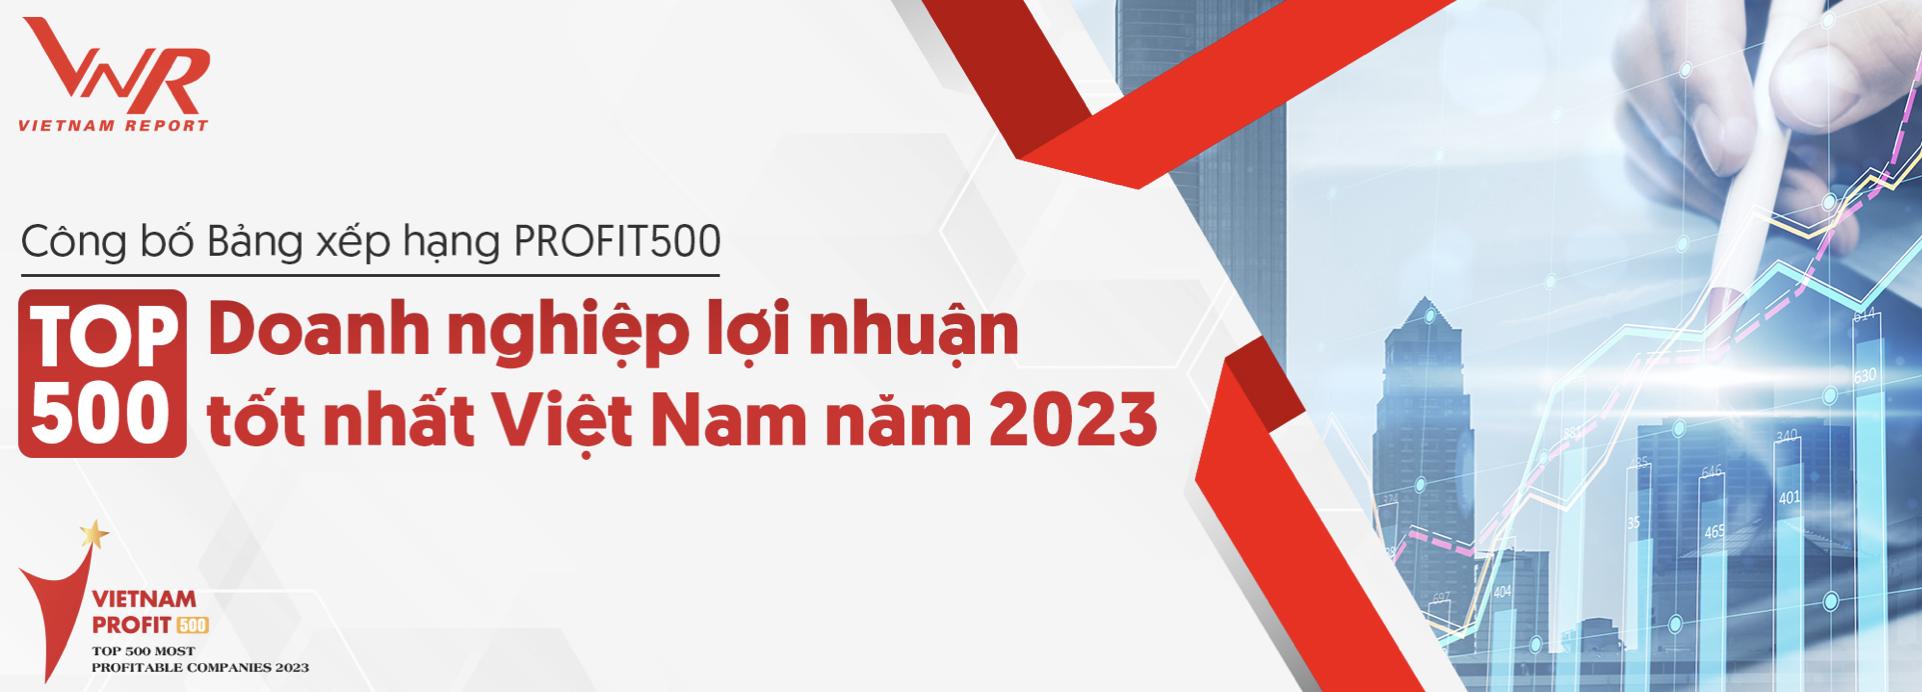 PETROSETCO có mặt trong bảng xếp hạng PROFIT500 - Top 500 Doanh nghiệp có lợi nhuận tốt nhất Việt Nam năm 2023 theo báo cáo đánh giá của tổ chức Vietnam Report.